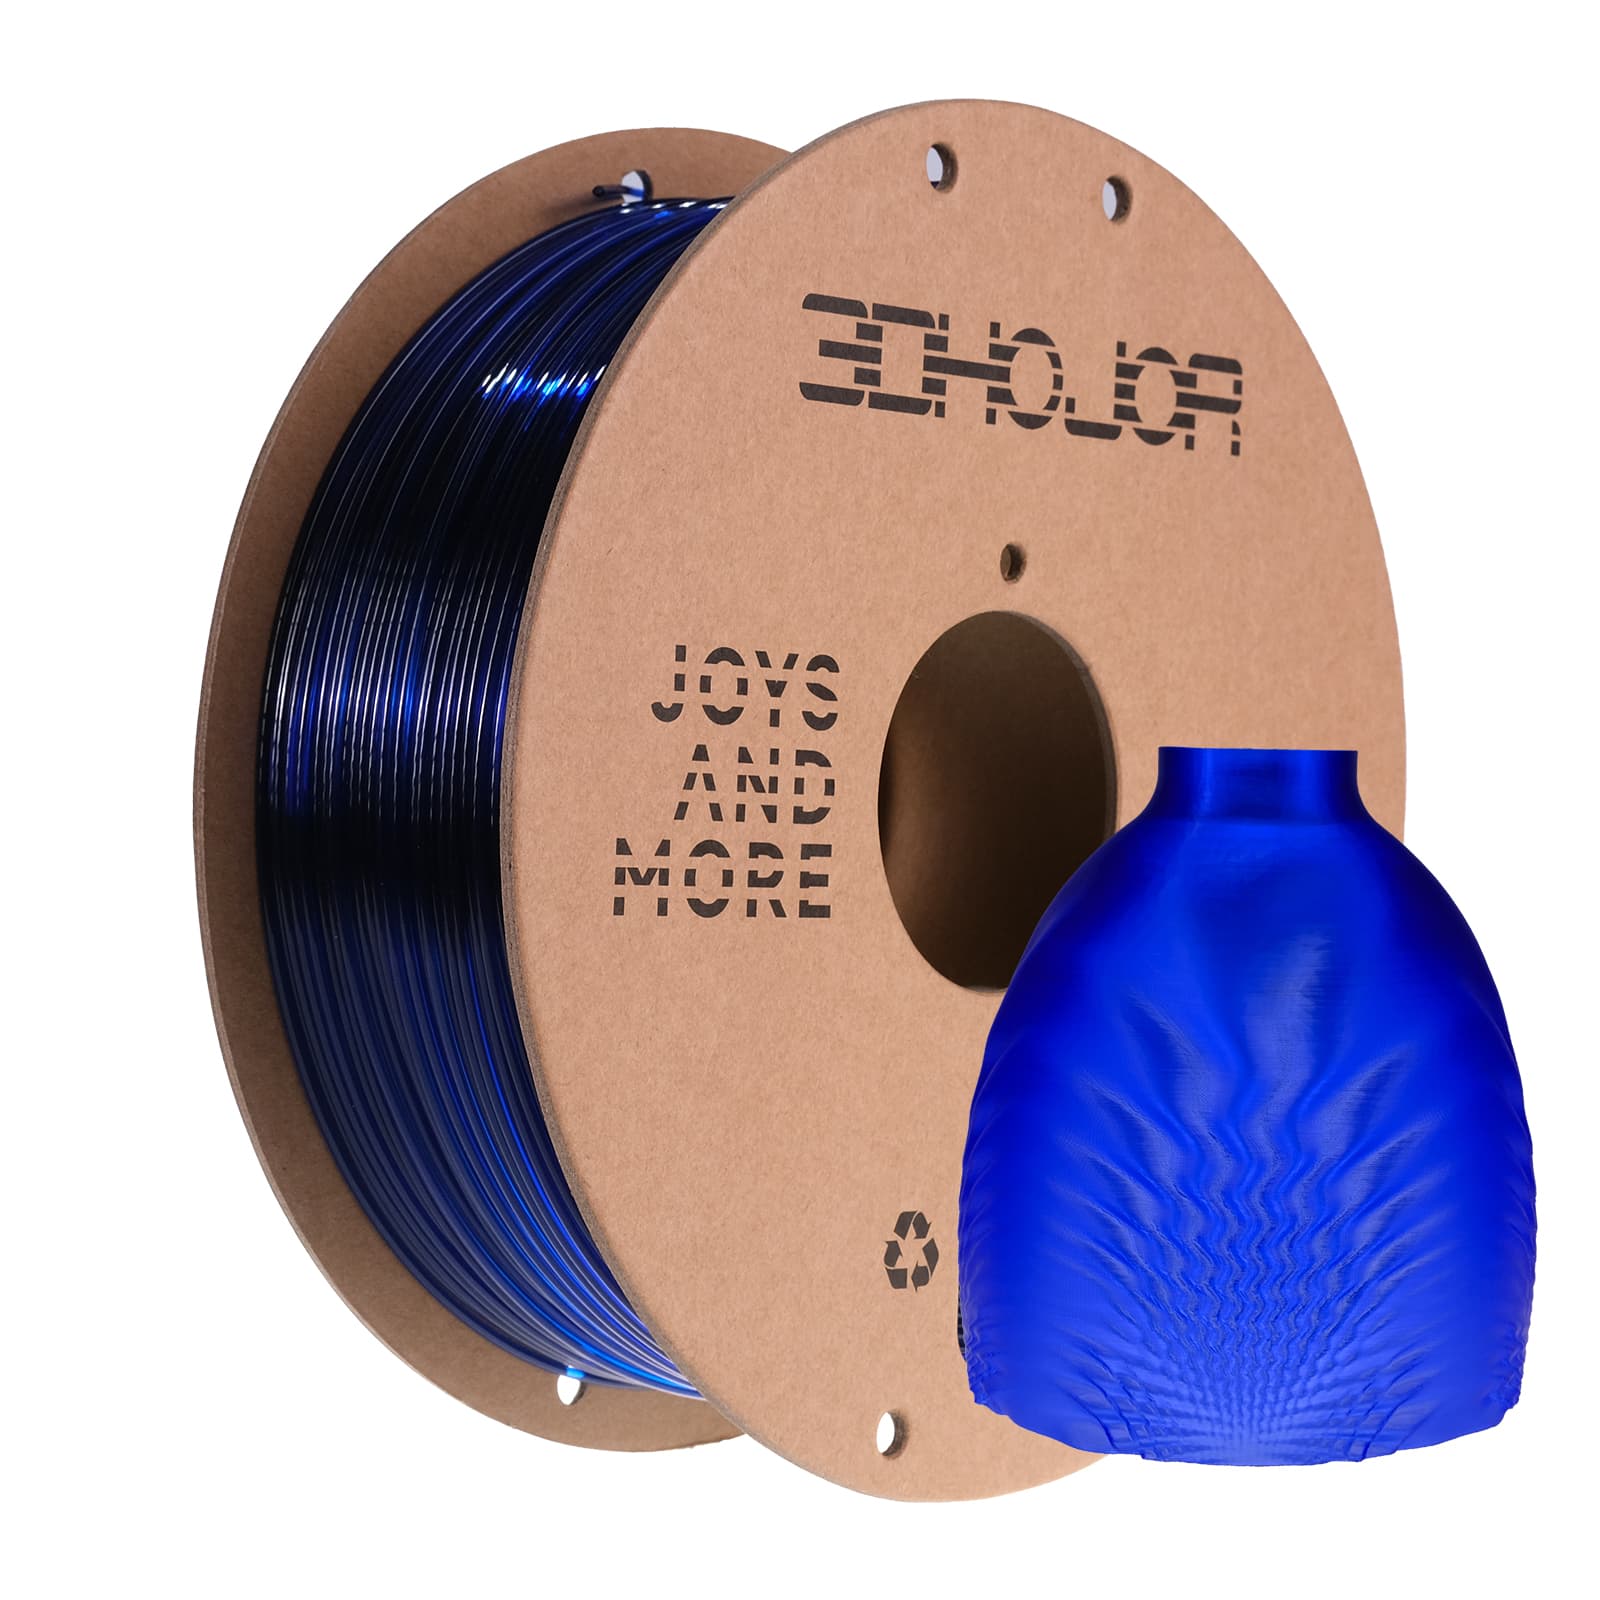 PETG 3D Printer Filament